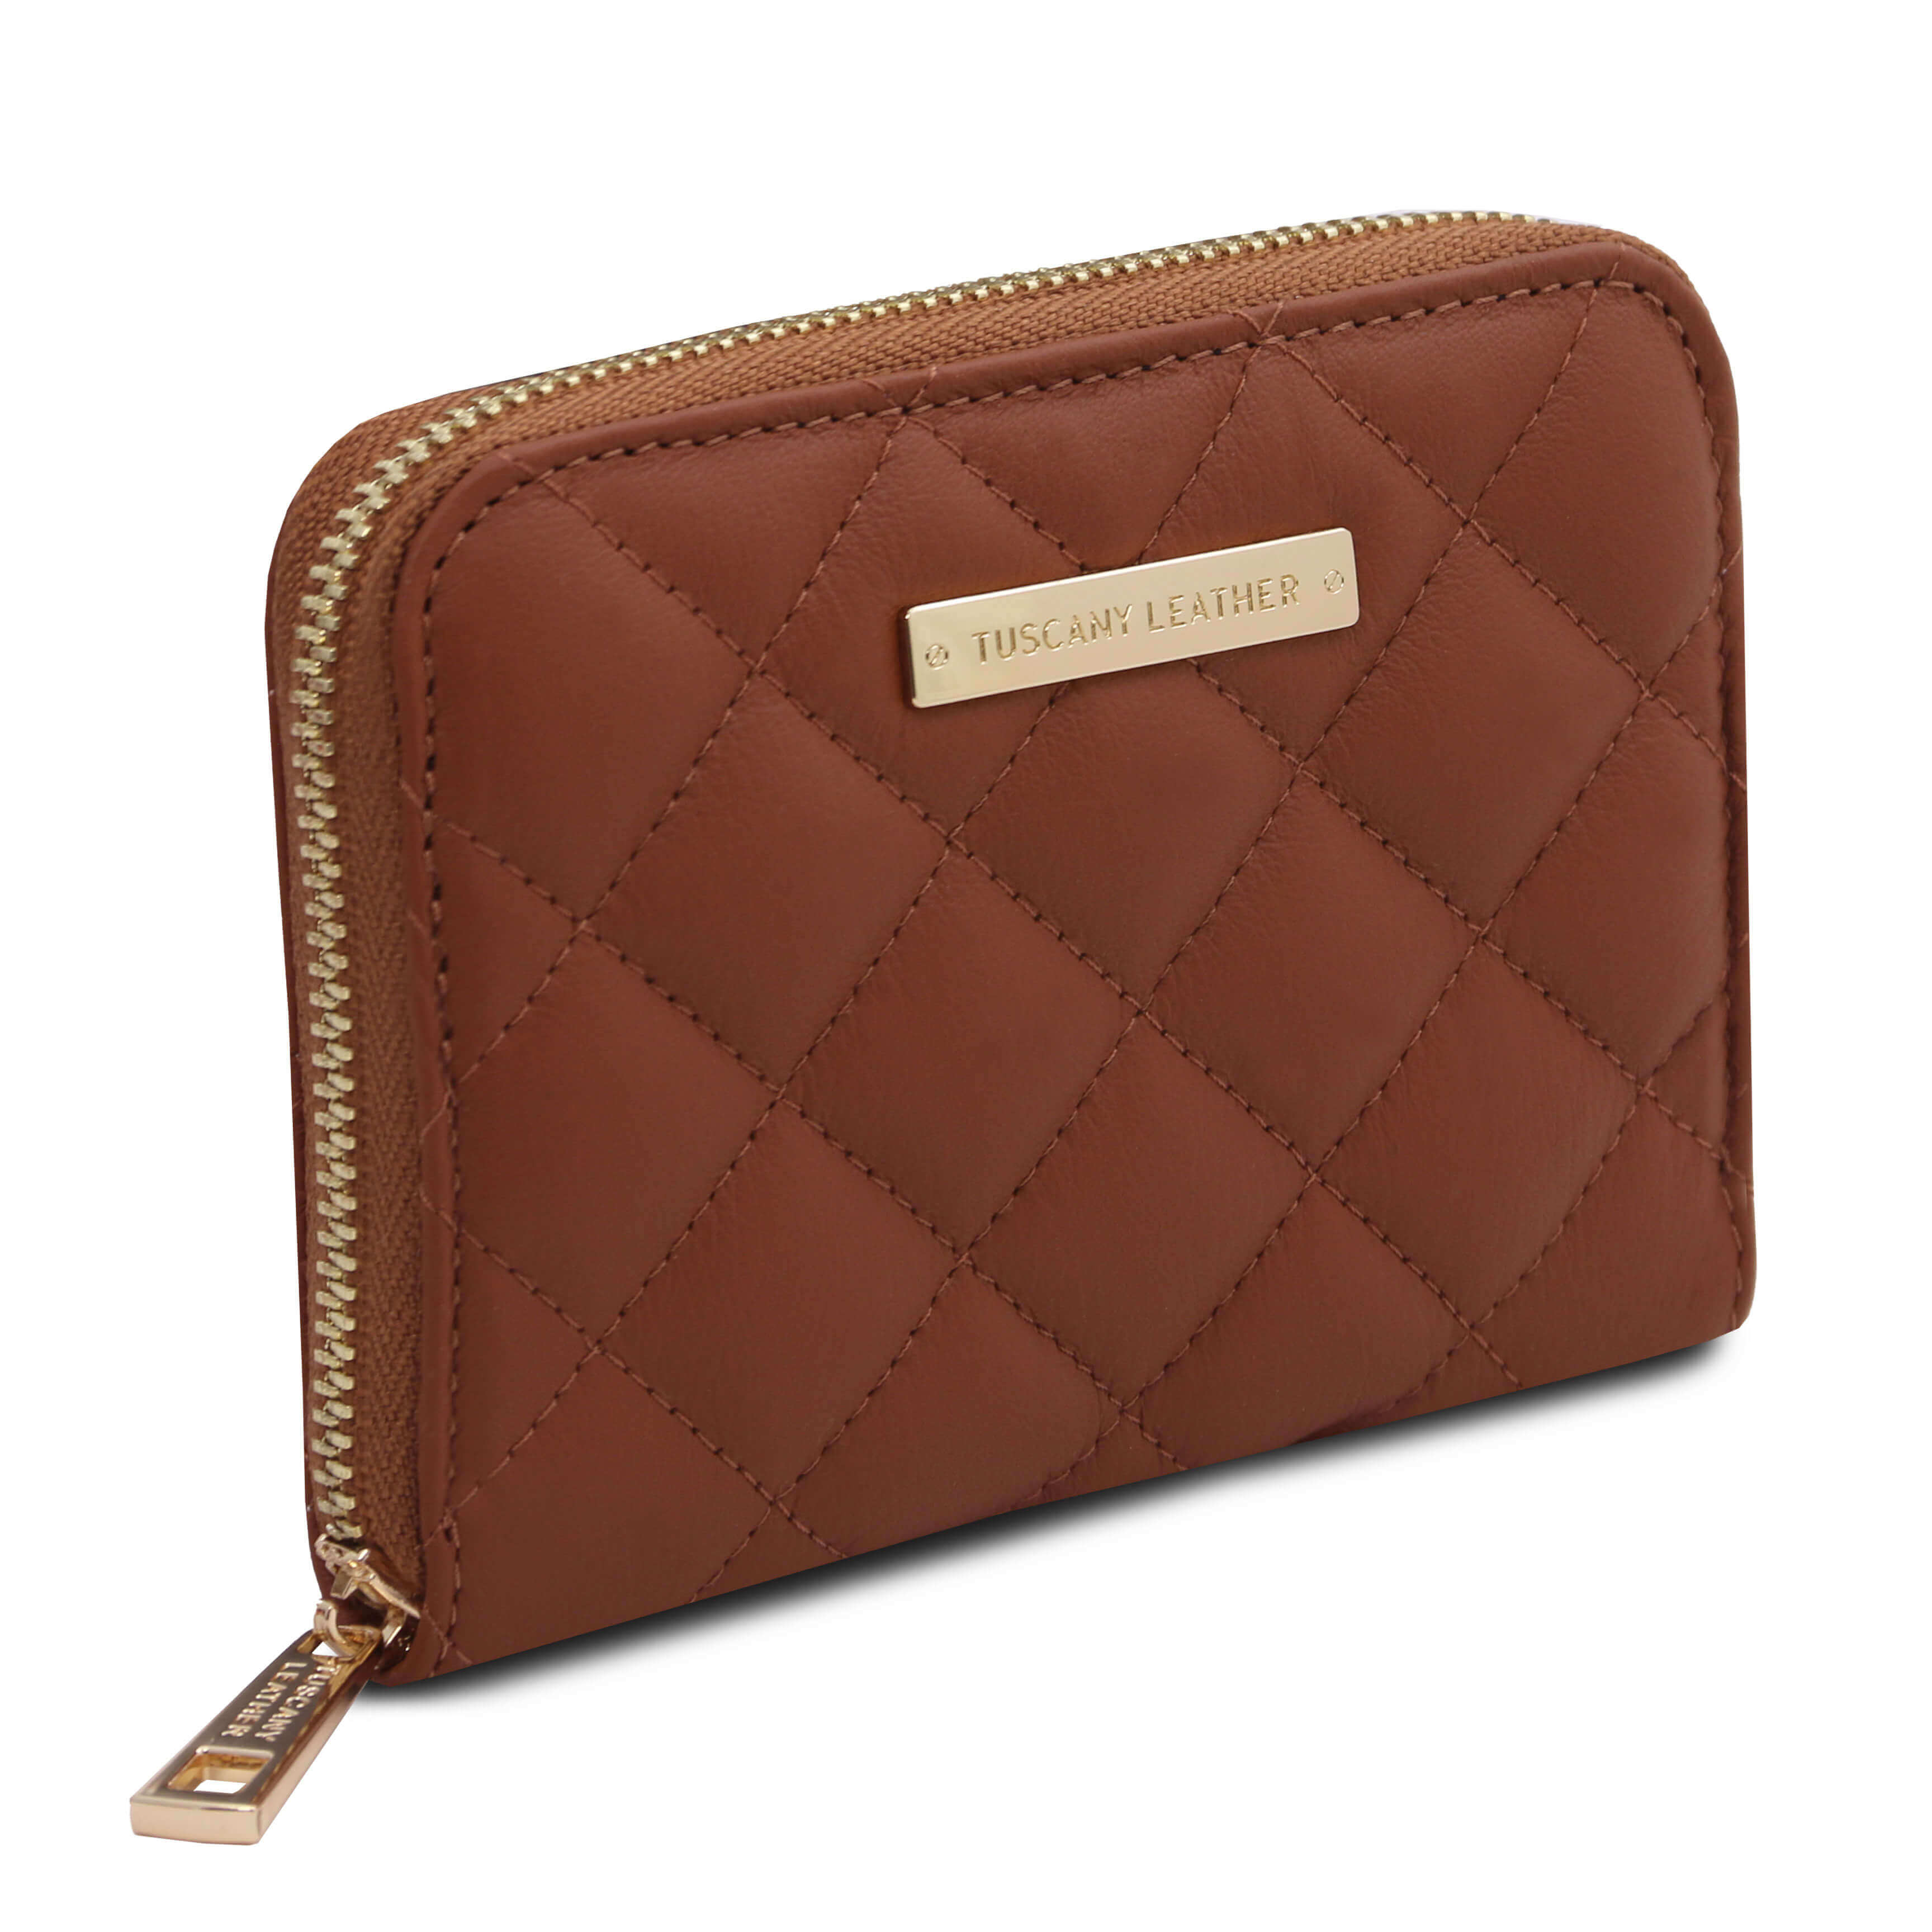 Tuscany Leather exclusieve leren portemonnee Teti voor dames tl142319 cognac zijkant